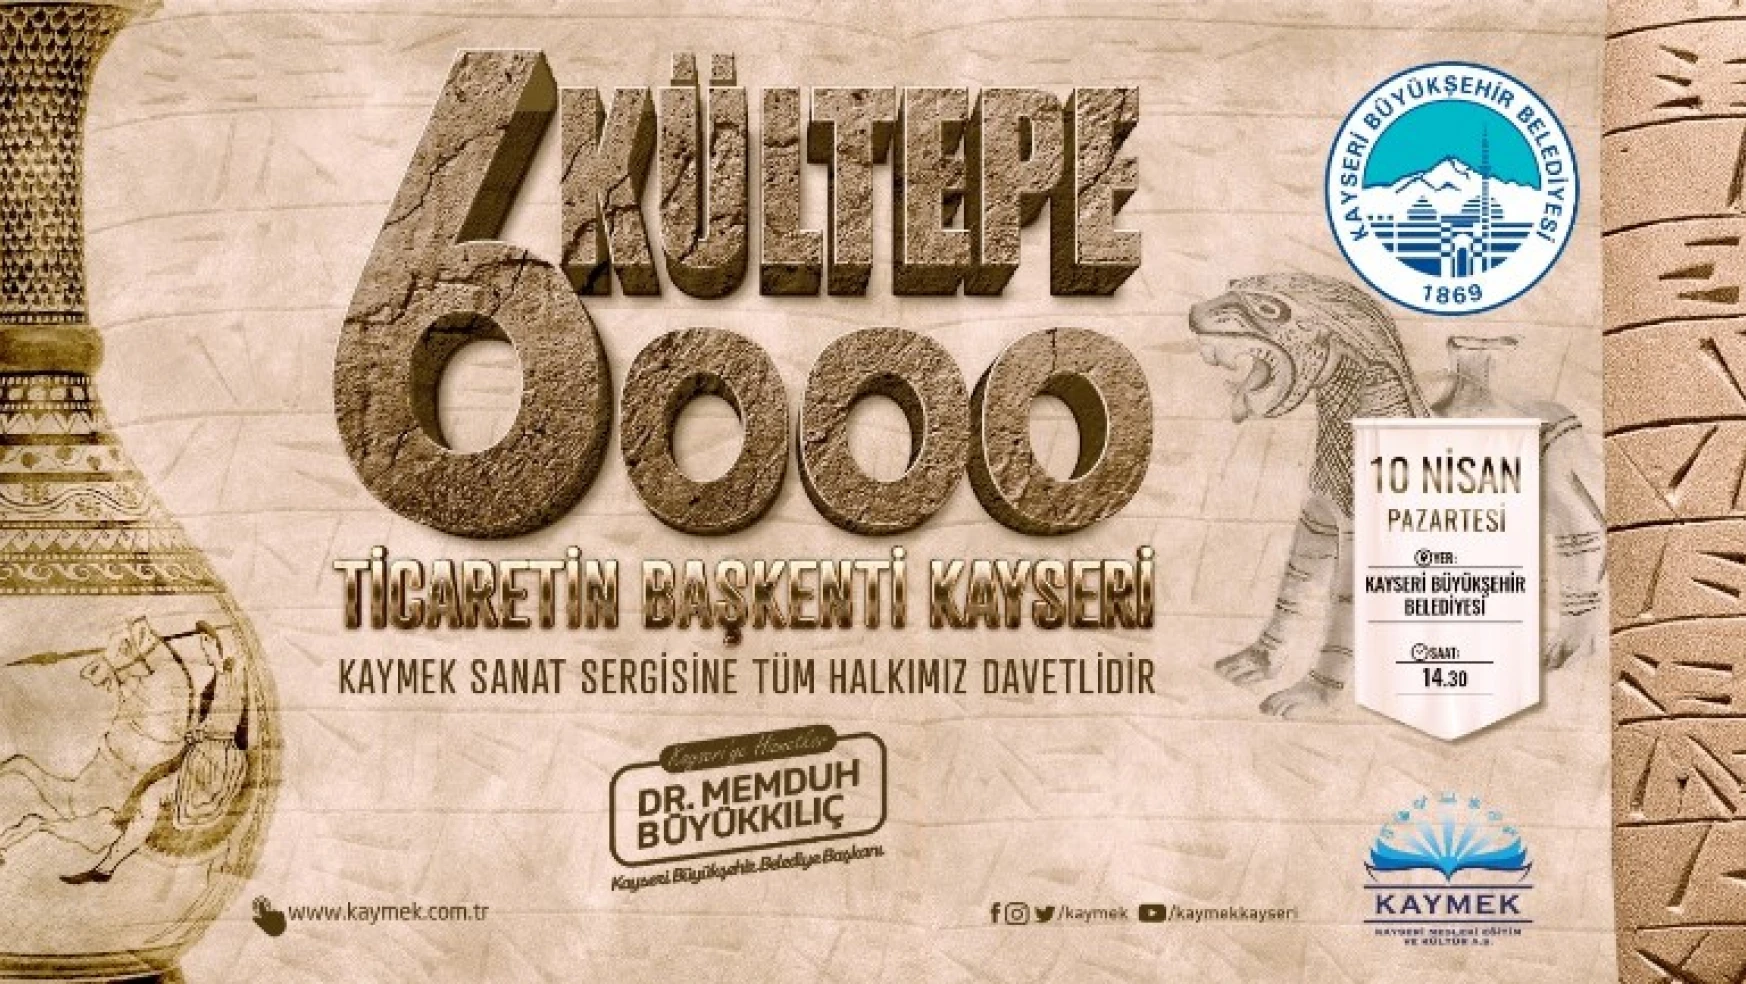 KAYMEK'ten 'Kültepe 6000' Ticaretin Başkenti Kayseri Sergisi